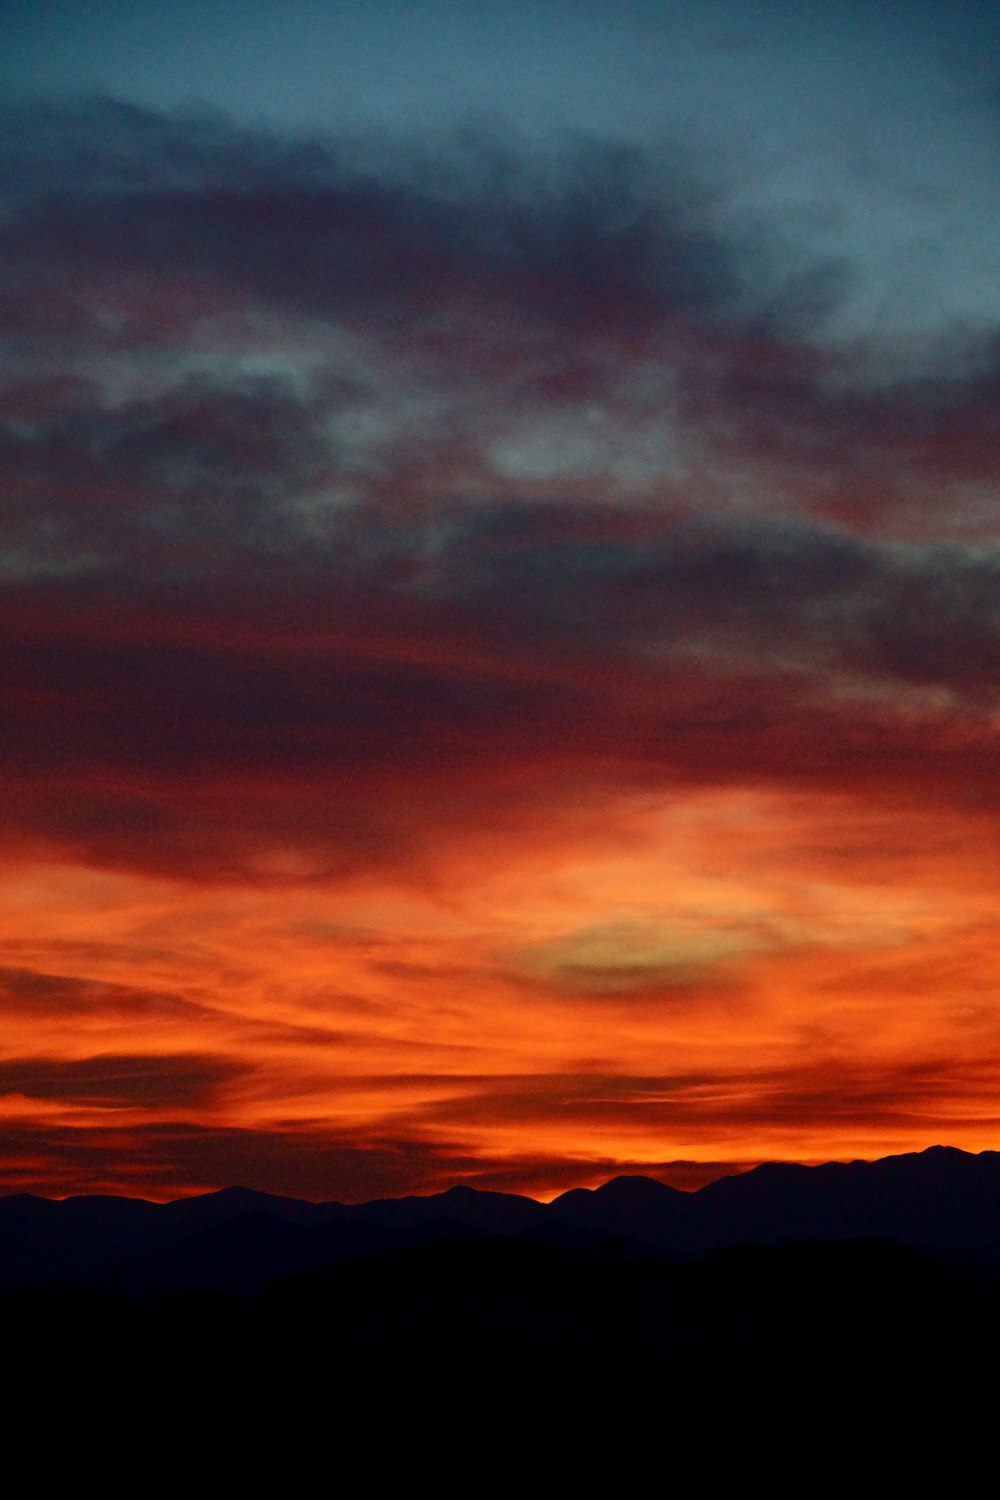 silueta de montañas bajo cielo nublado durante la puesta del sol